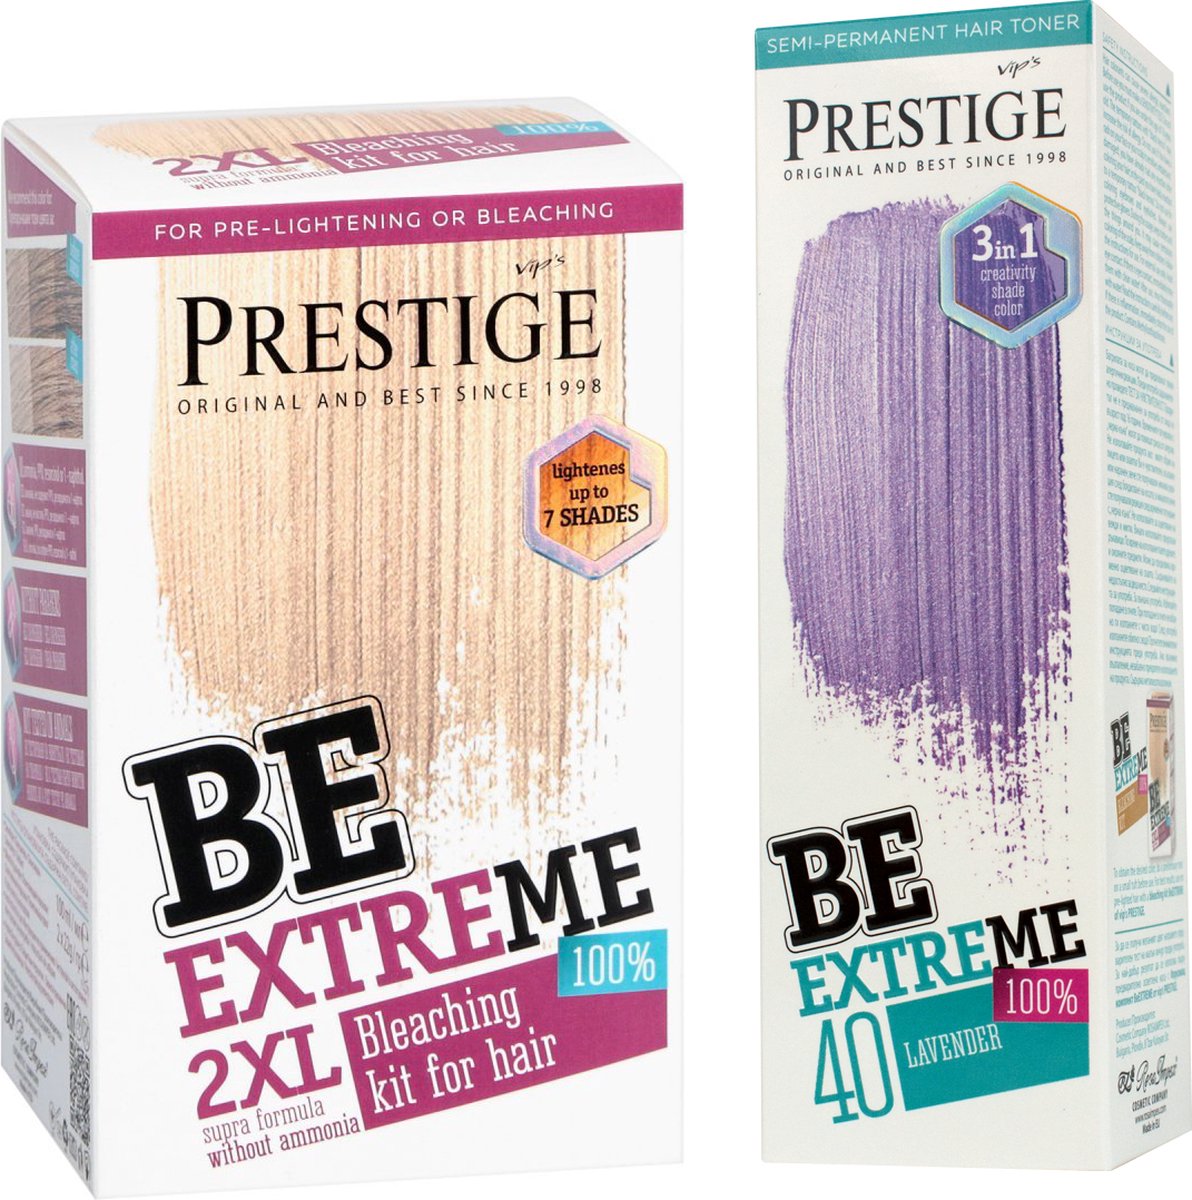 Prestige BeExtreme Semi-Permanente Paarse Haarkleuring - Bleach kit & Lavender Voordeelset